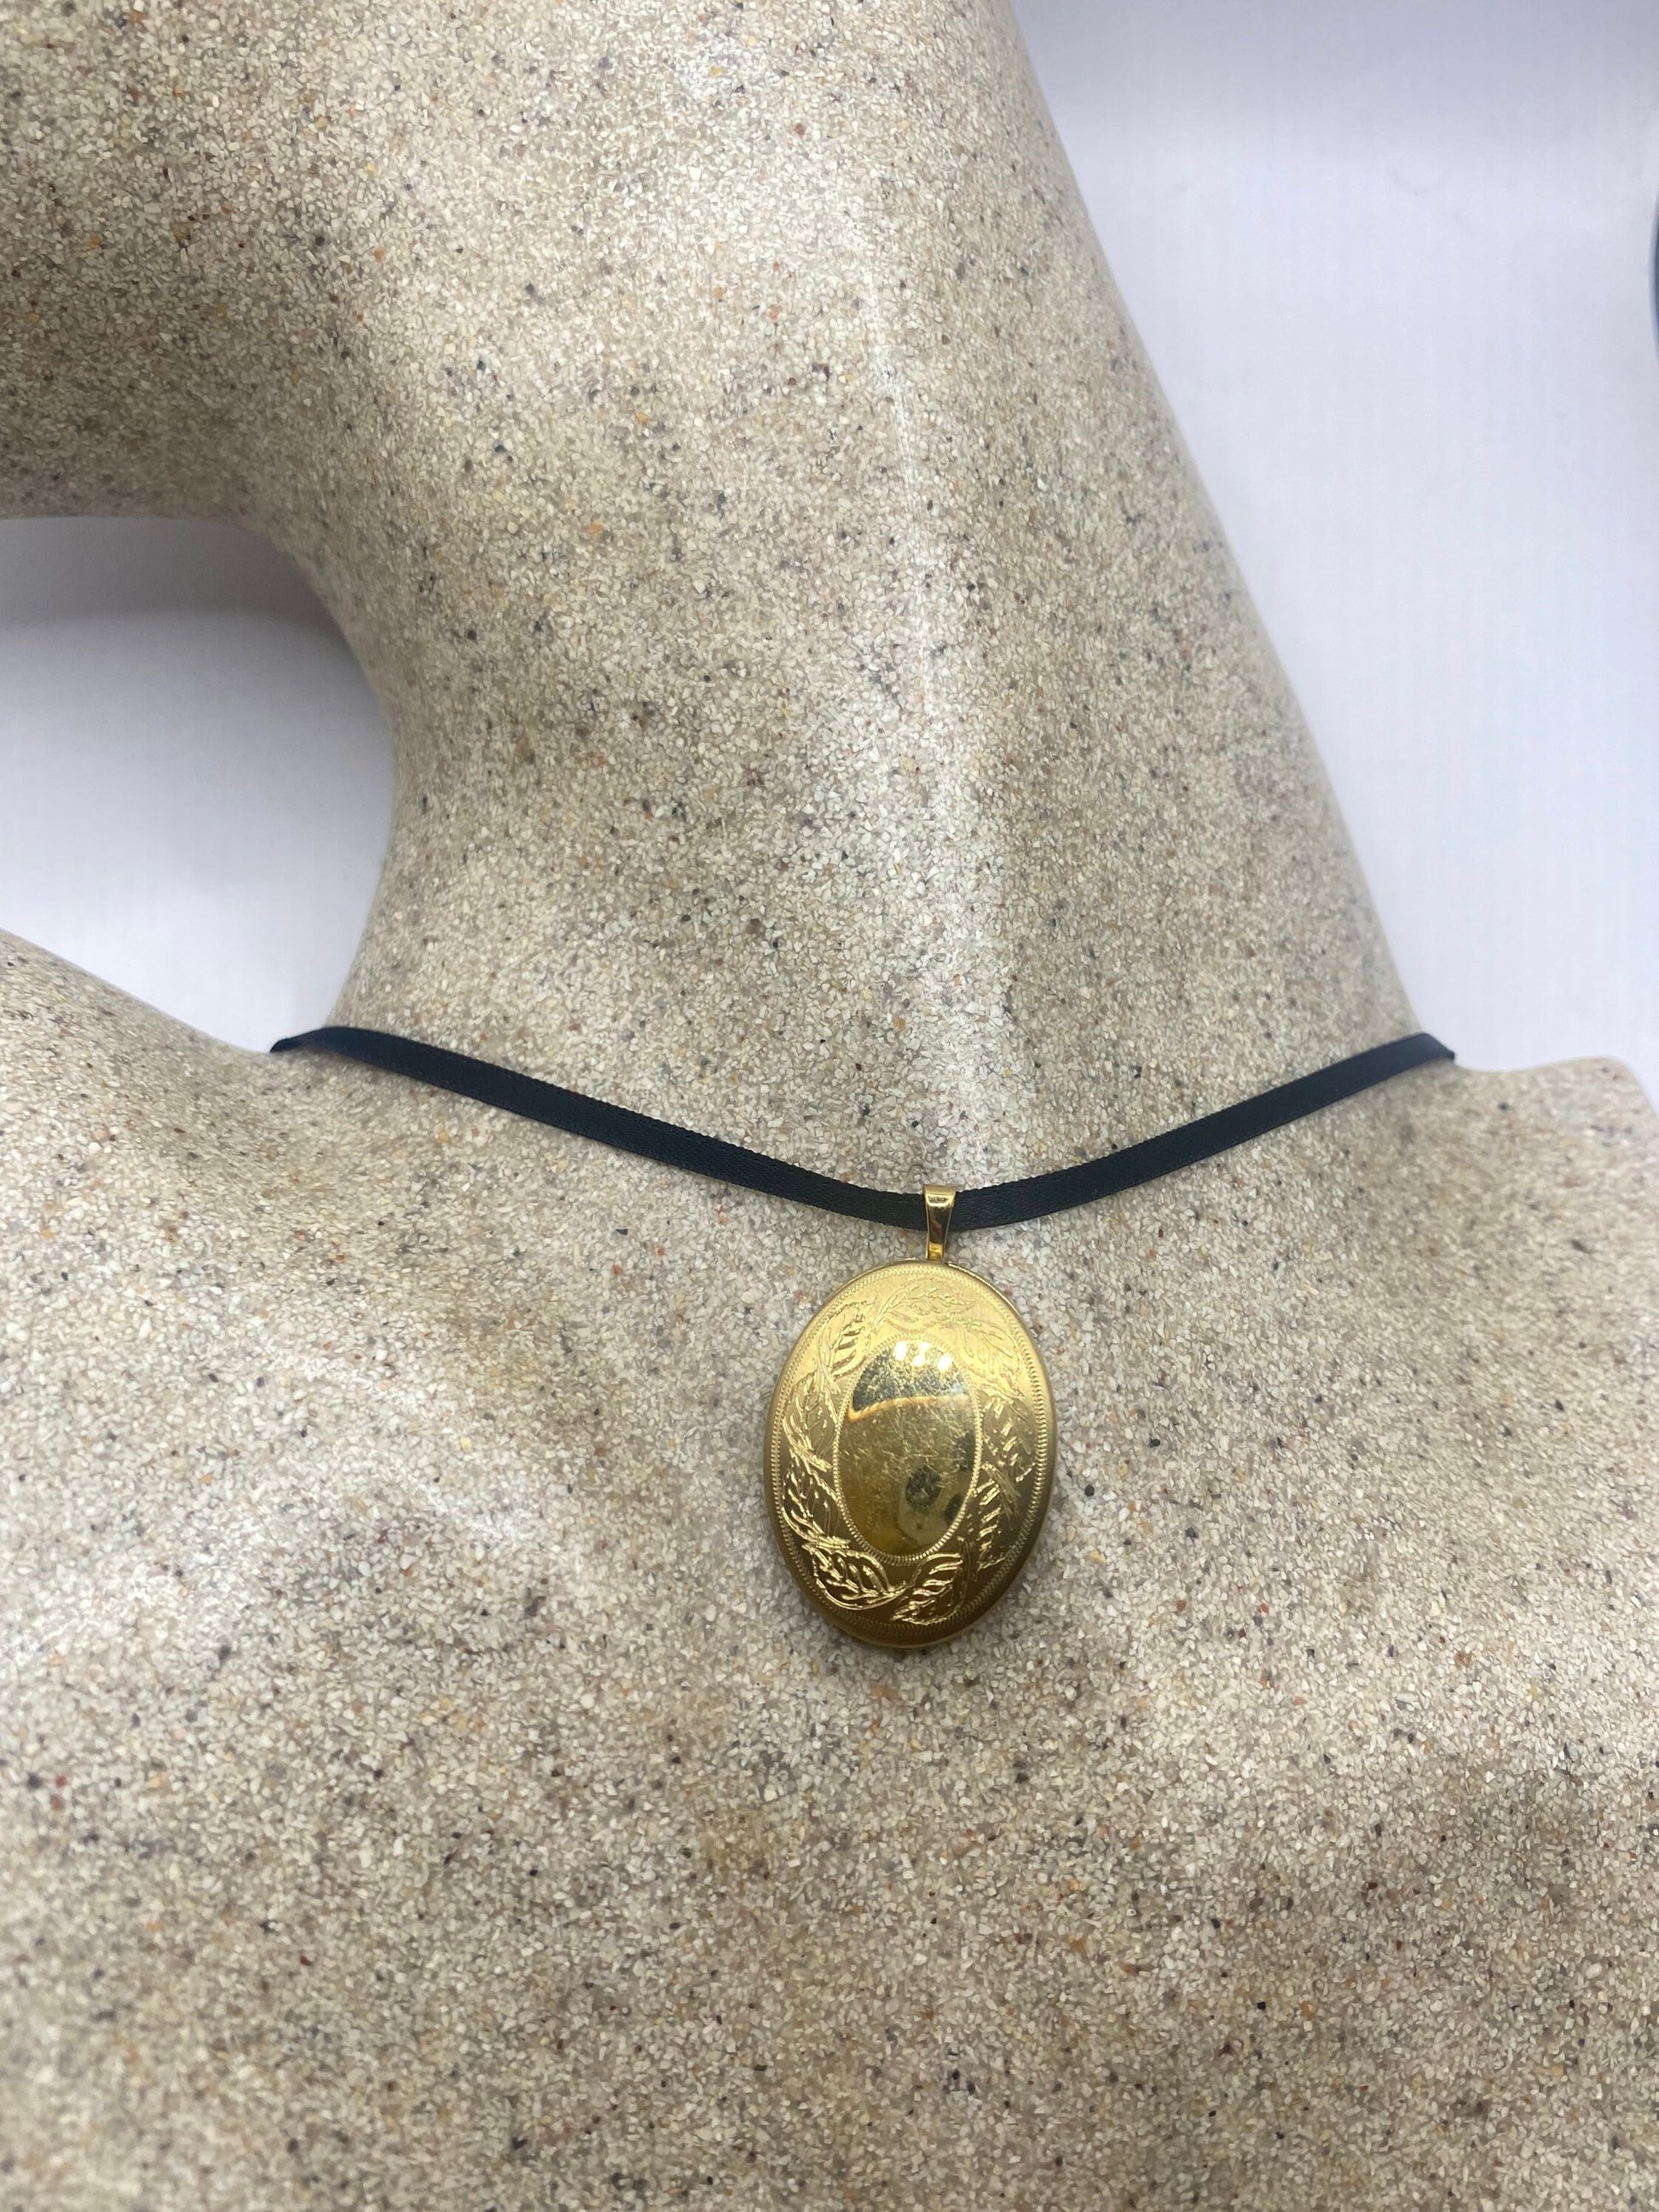 Vintage Locket Choker Gold Filled Necklace